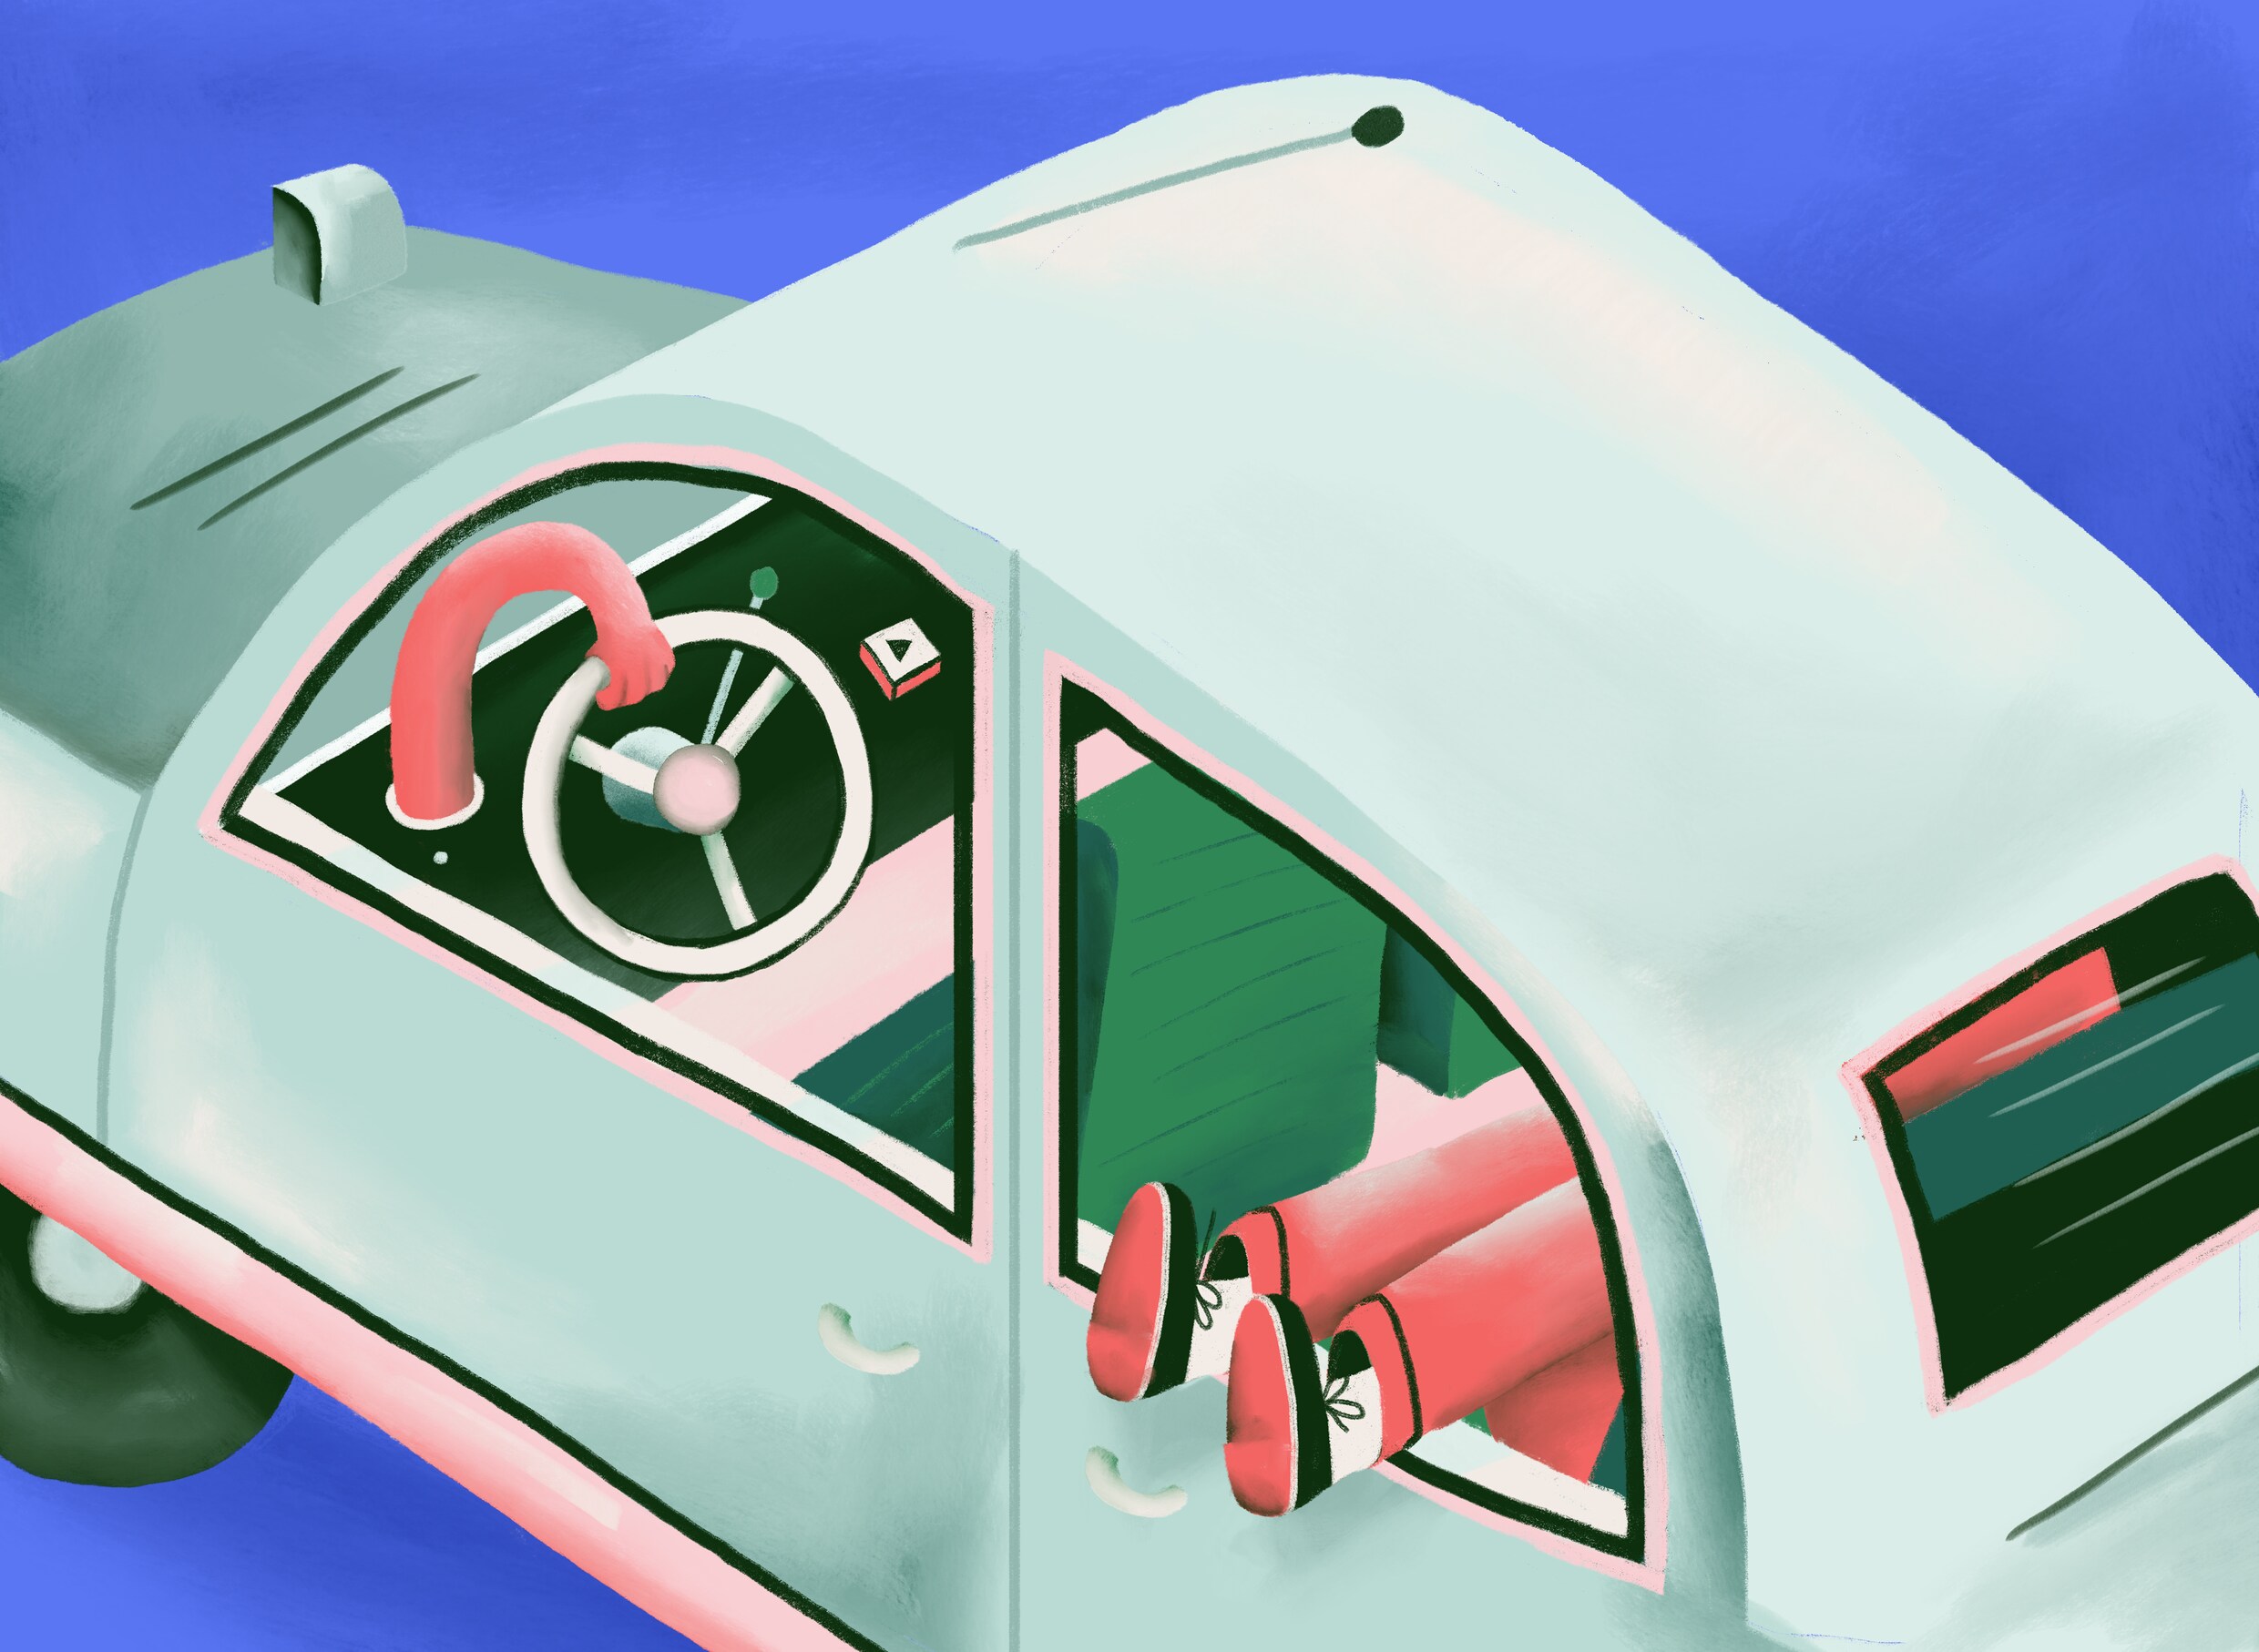 De grote afwezige op het autosalon: de zelfrijdende wagen. Hoe komt dat?